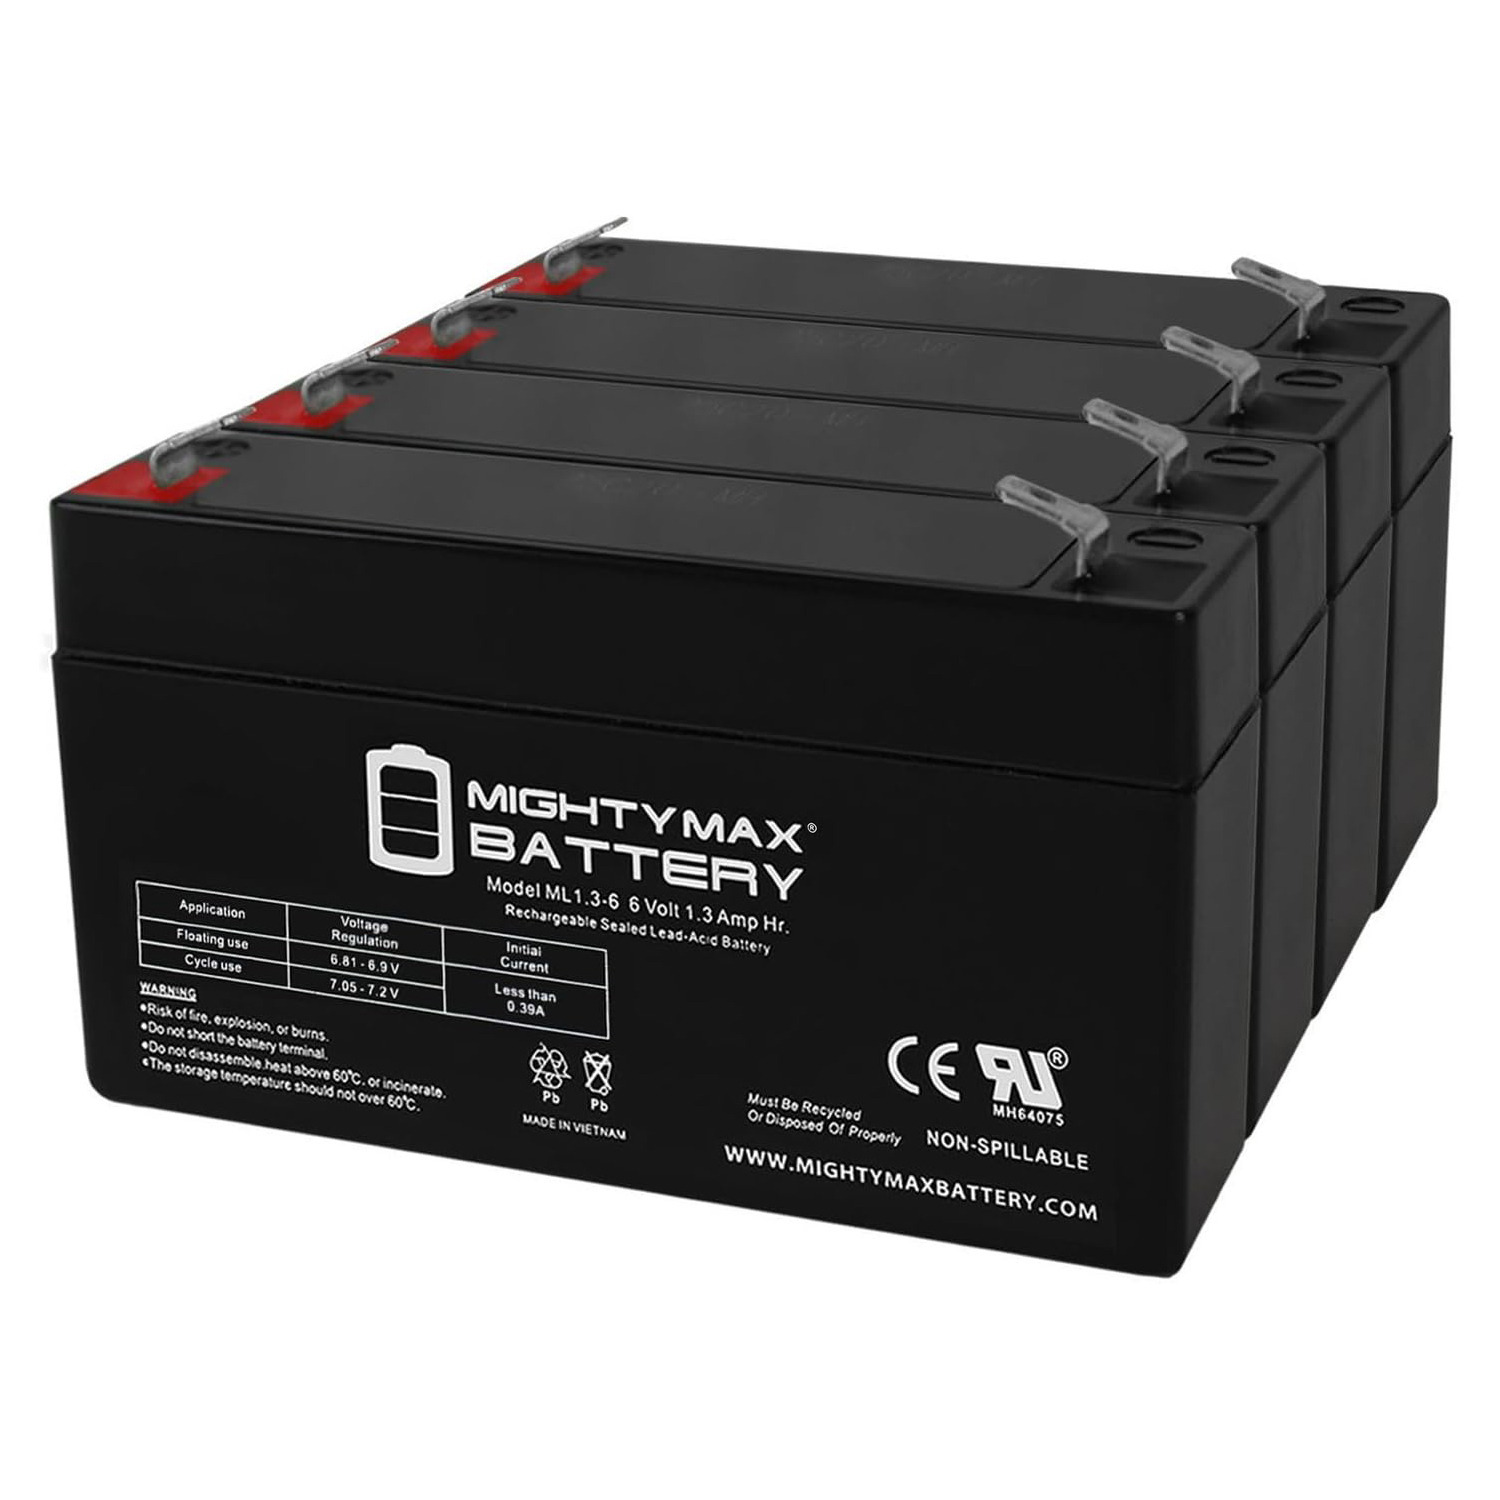 6V 1.3Ah Ohmeda 9000 Syringe Pump Medical Battery - 4 Pack